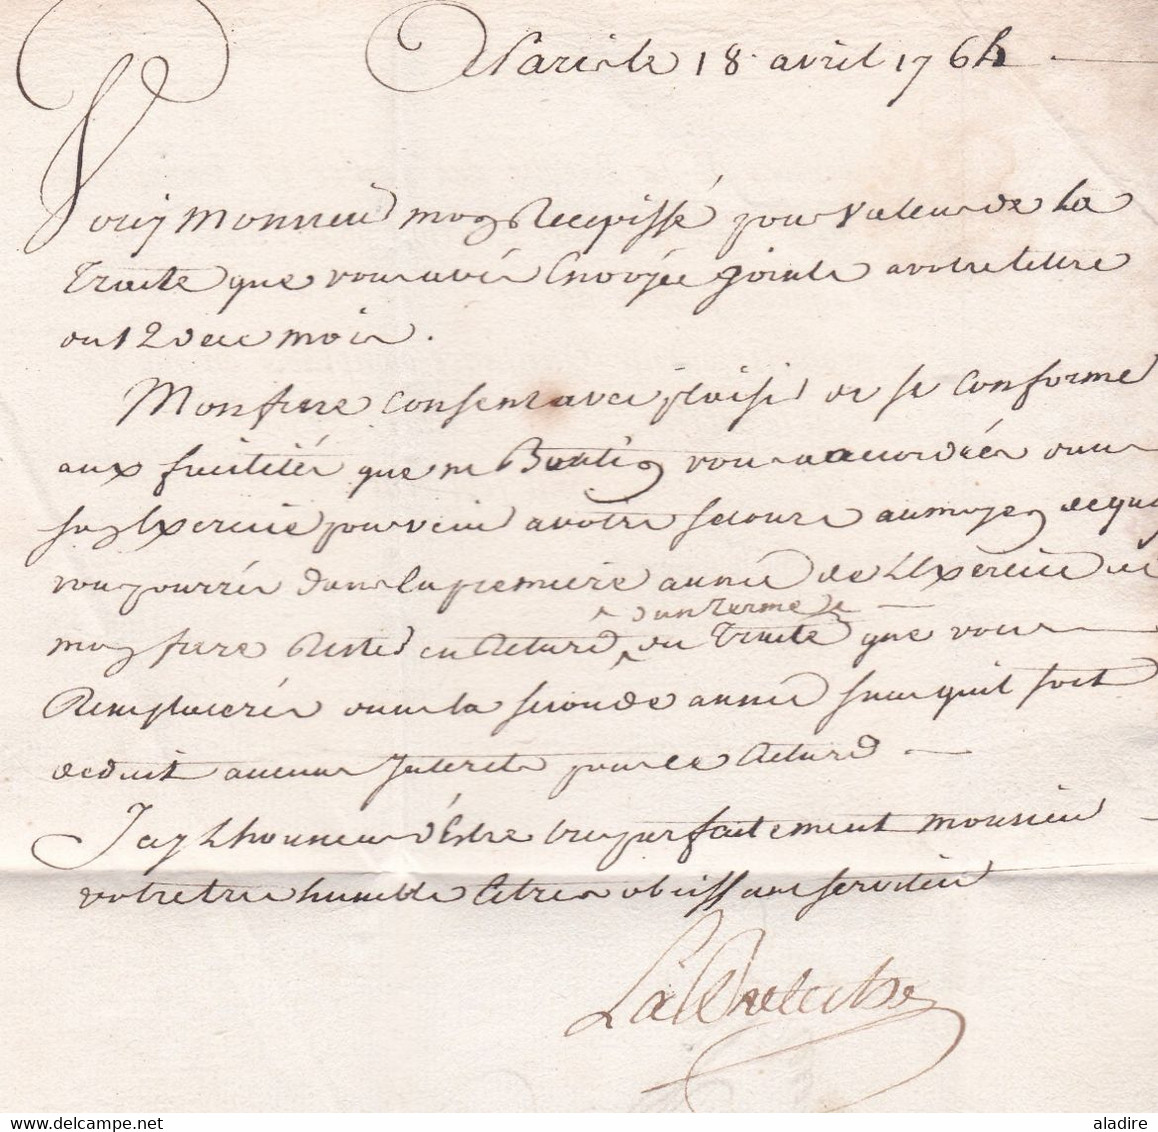 1764 - Lettre pliée avec corresp de Paris en Port Payé vers le Château du Loir , auj. Montval sur Loir, Sarthe